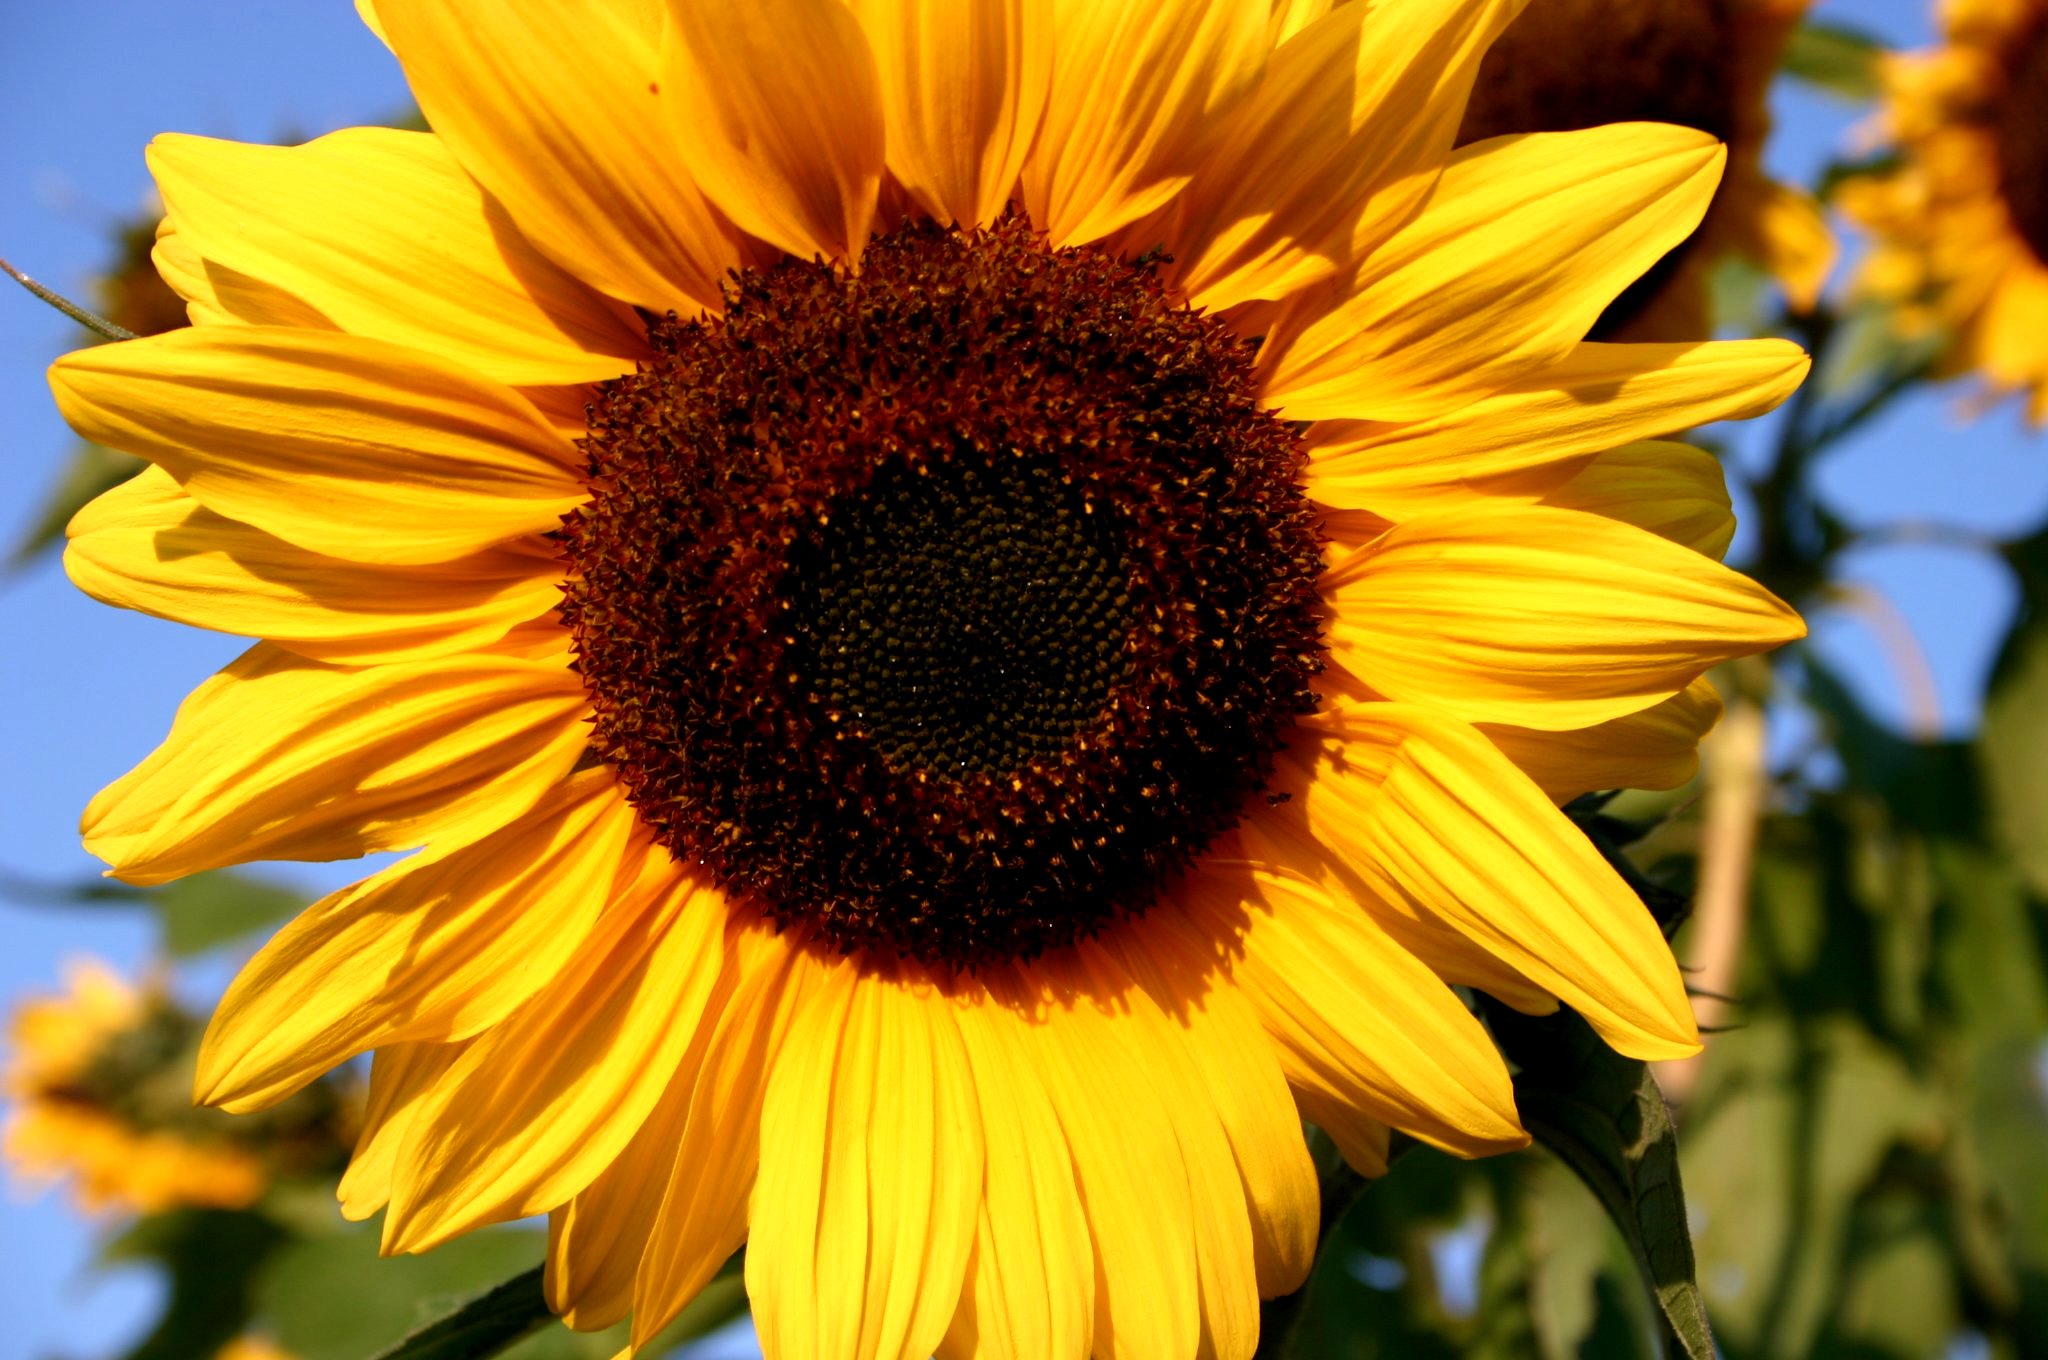 Liebevoll leben und lernen - Sanoas Lieblings Unikate - Gartengestaltung - Sonnenblume im Garten